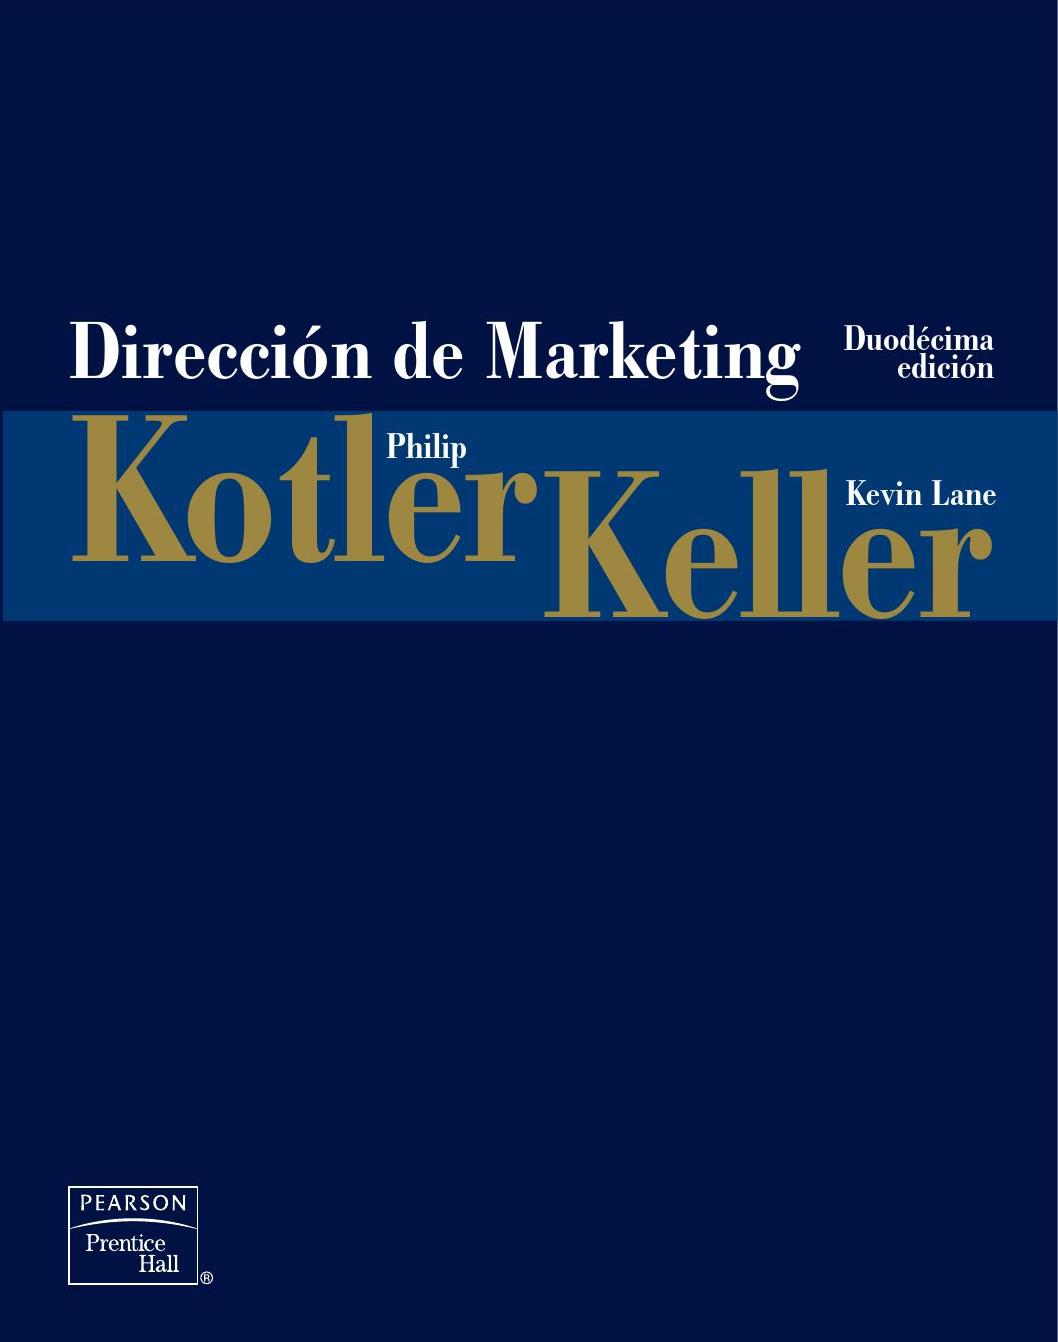 Resultado de imagen para Direccion de Marketing - Philip Kotler & Kevin Lane Keller - 12va Edicion.